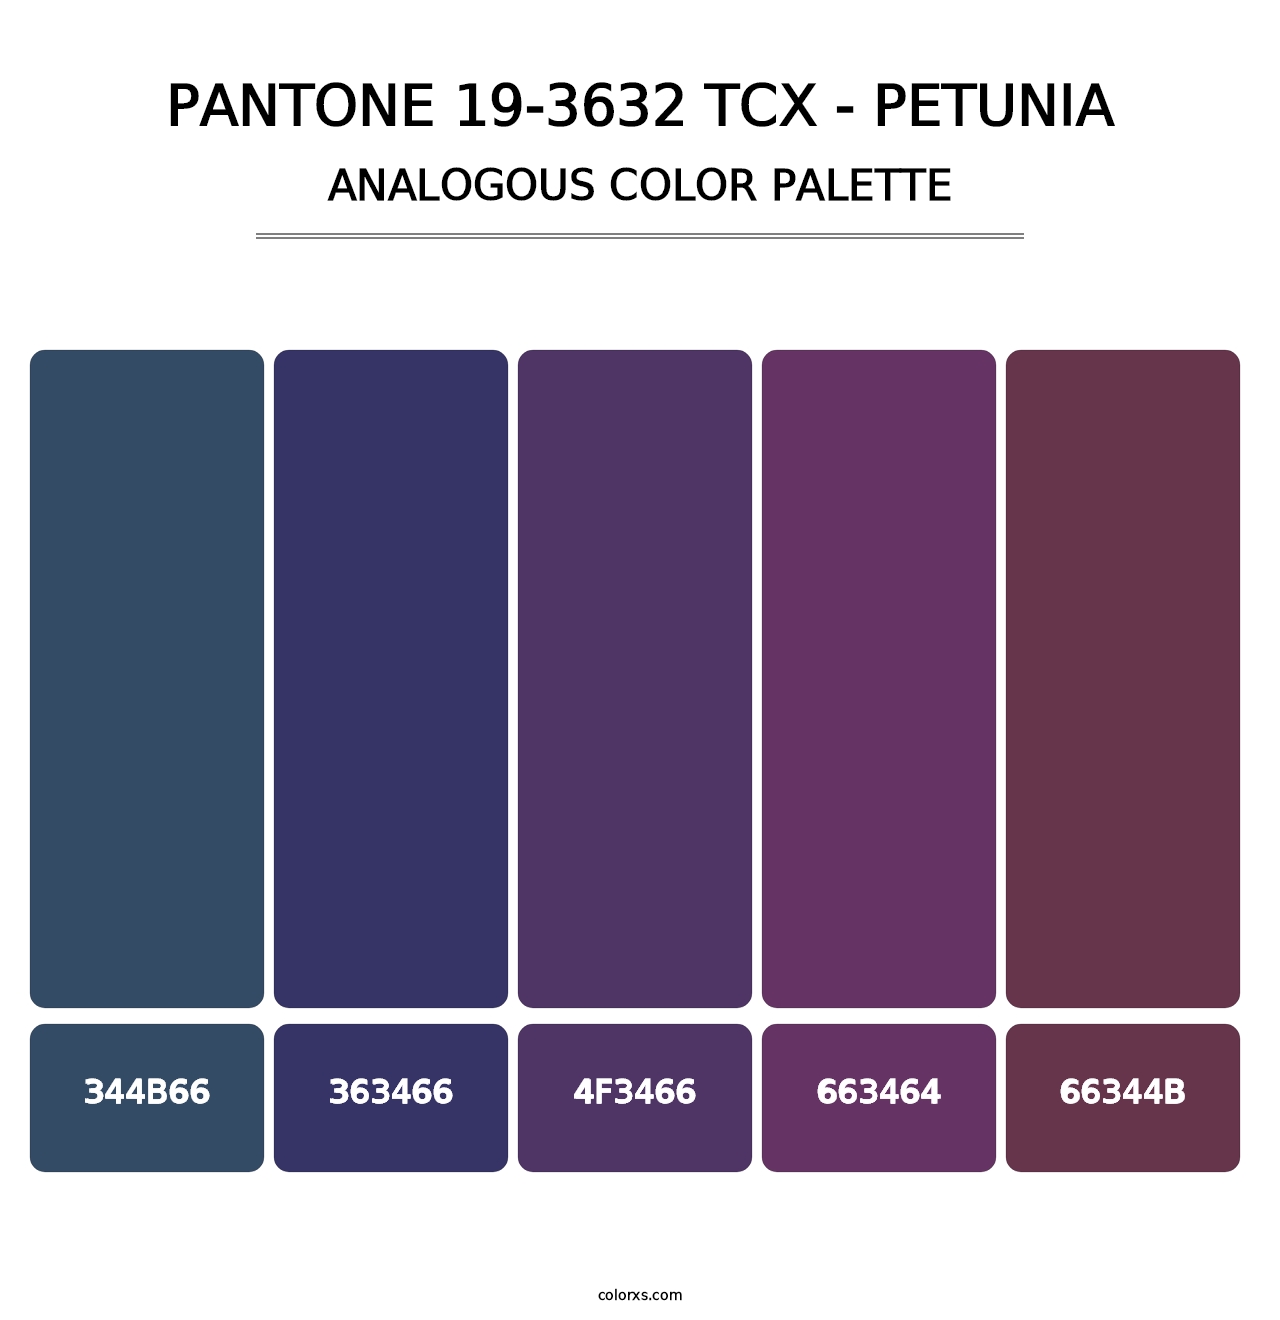 PANTONE 19-3632 TCX - Petunia - Analogous Color Palette